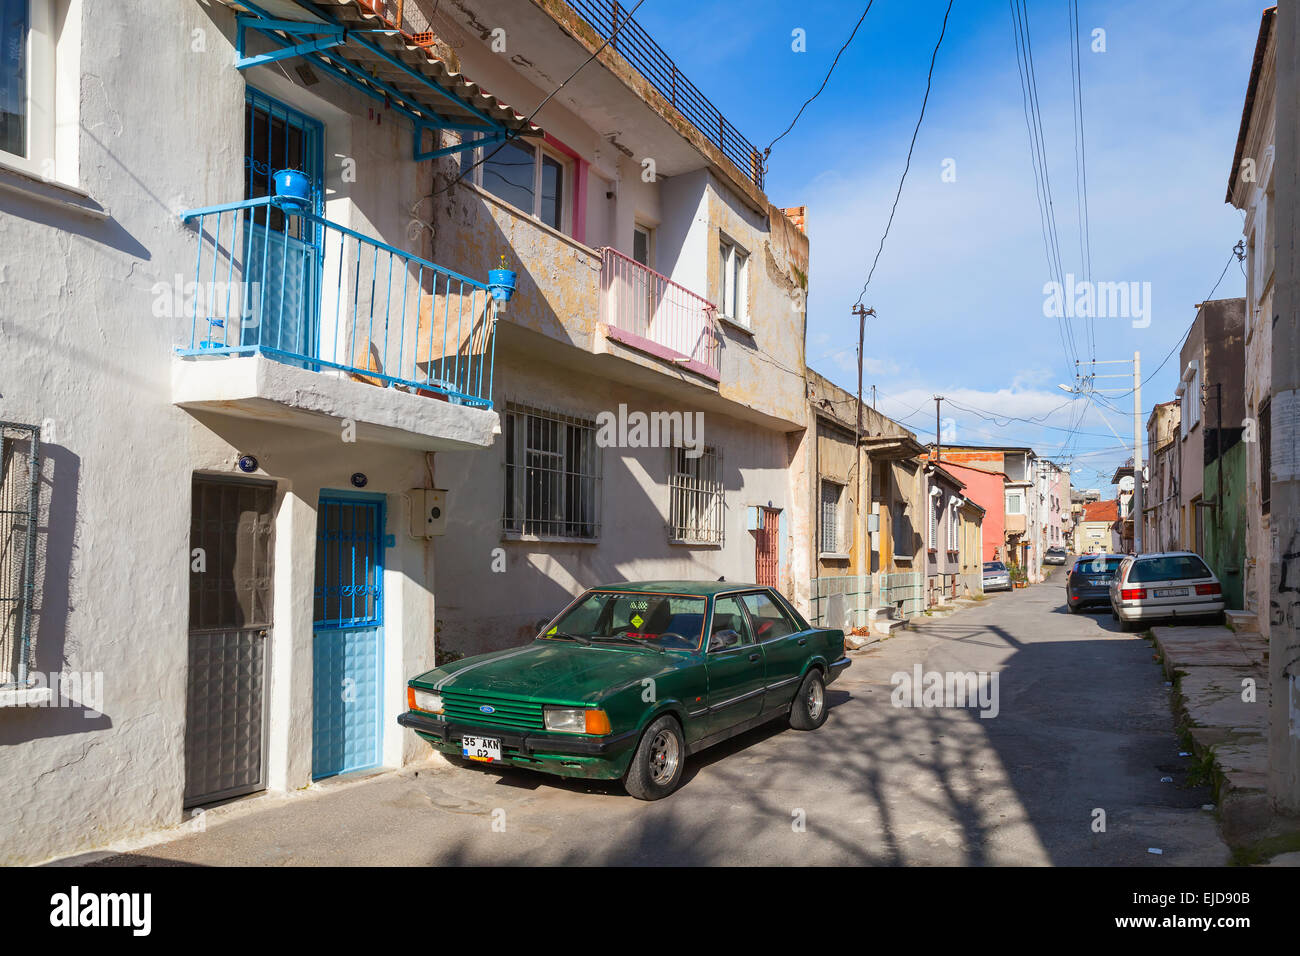 Izmir, Turquie - 12 Février 2015 : Street view ordinaire avec de petites maisons individuelles et des voitures en stationnement, vieille ville d'Izmir Banque D'Images